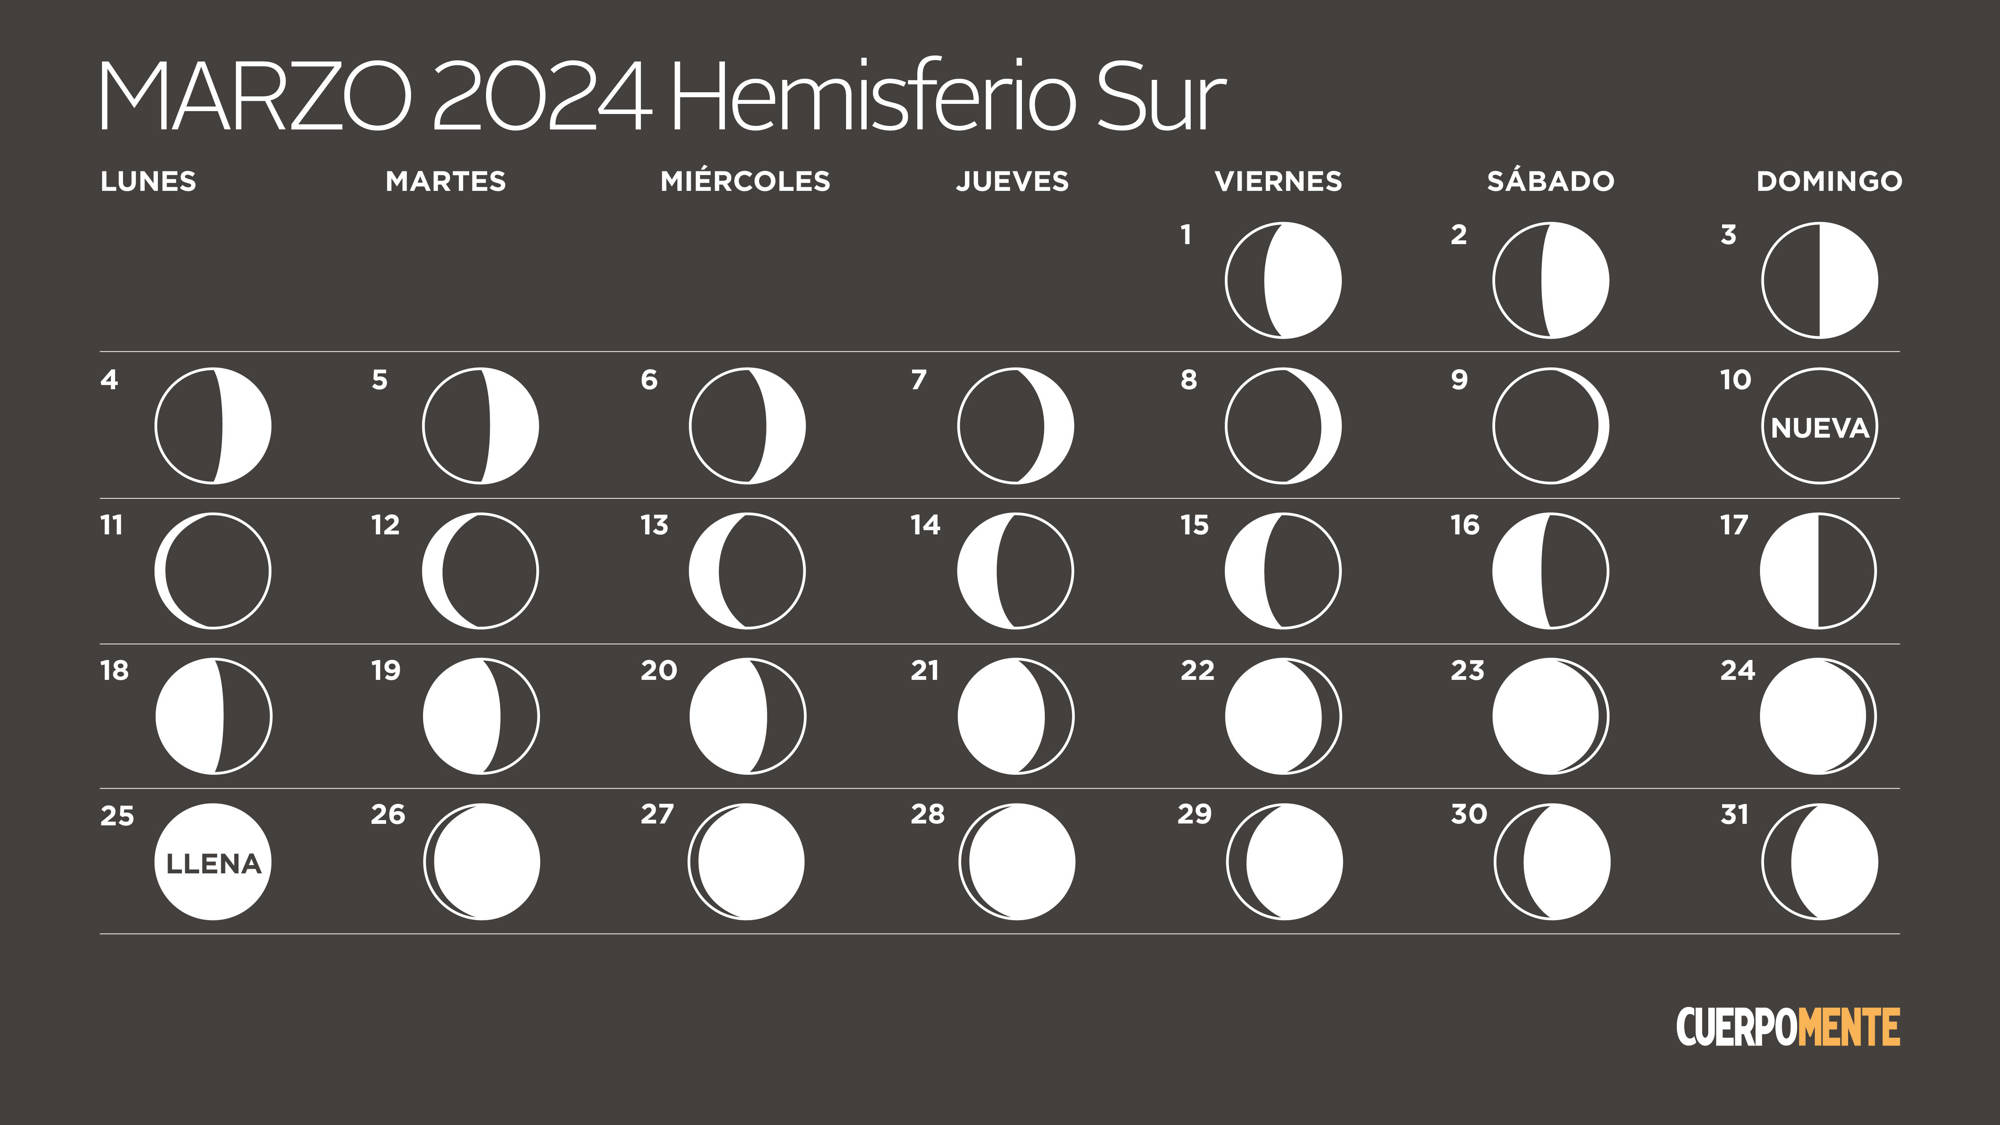 Calendario lunar de marzo 2024 (hemisferio sur)